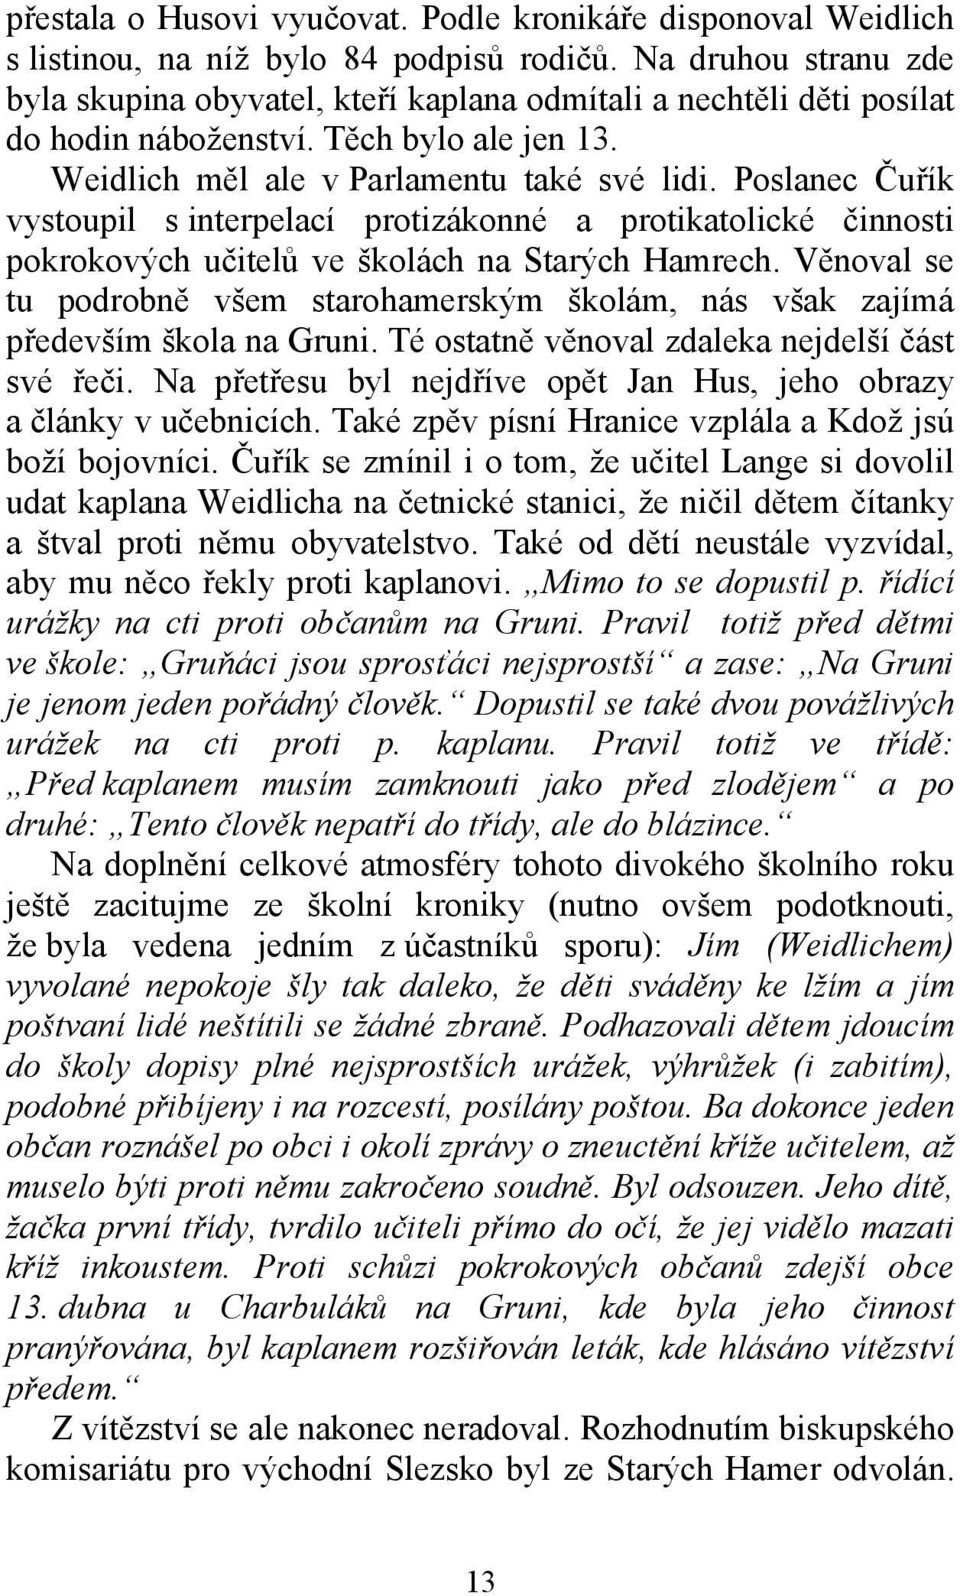 Poslanec Čuřík vystoupil s interpelací protizákonné a protikatolické činnosti pokrokových učitelů ve školách na Starých Hamrech.